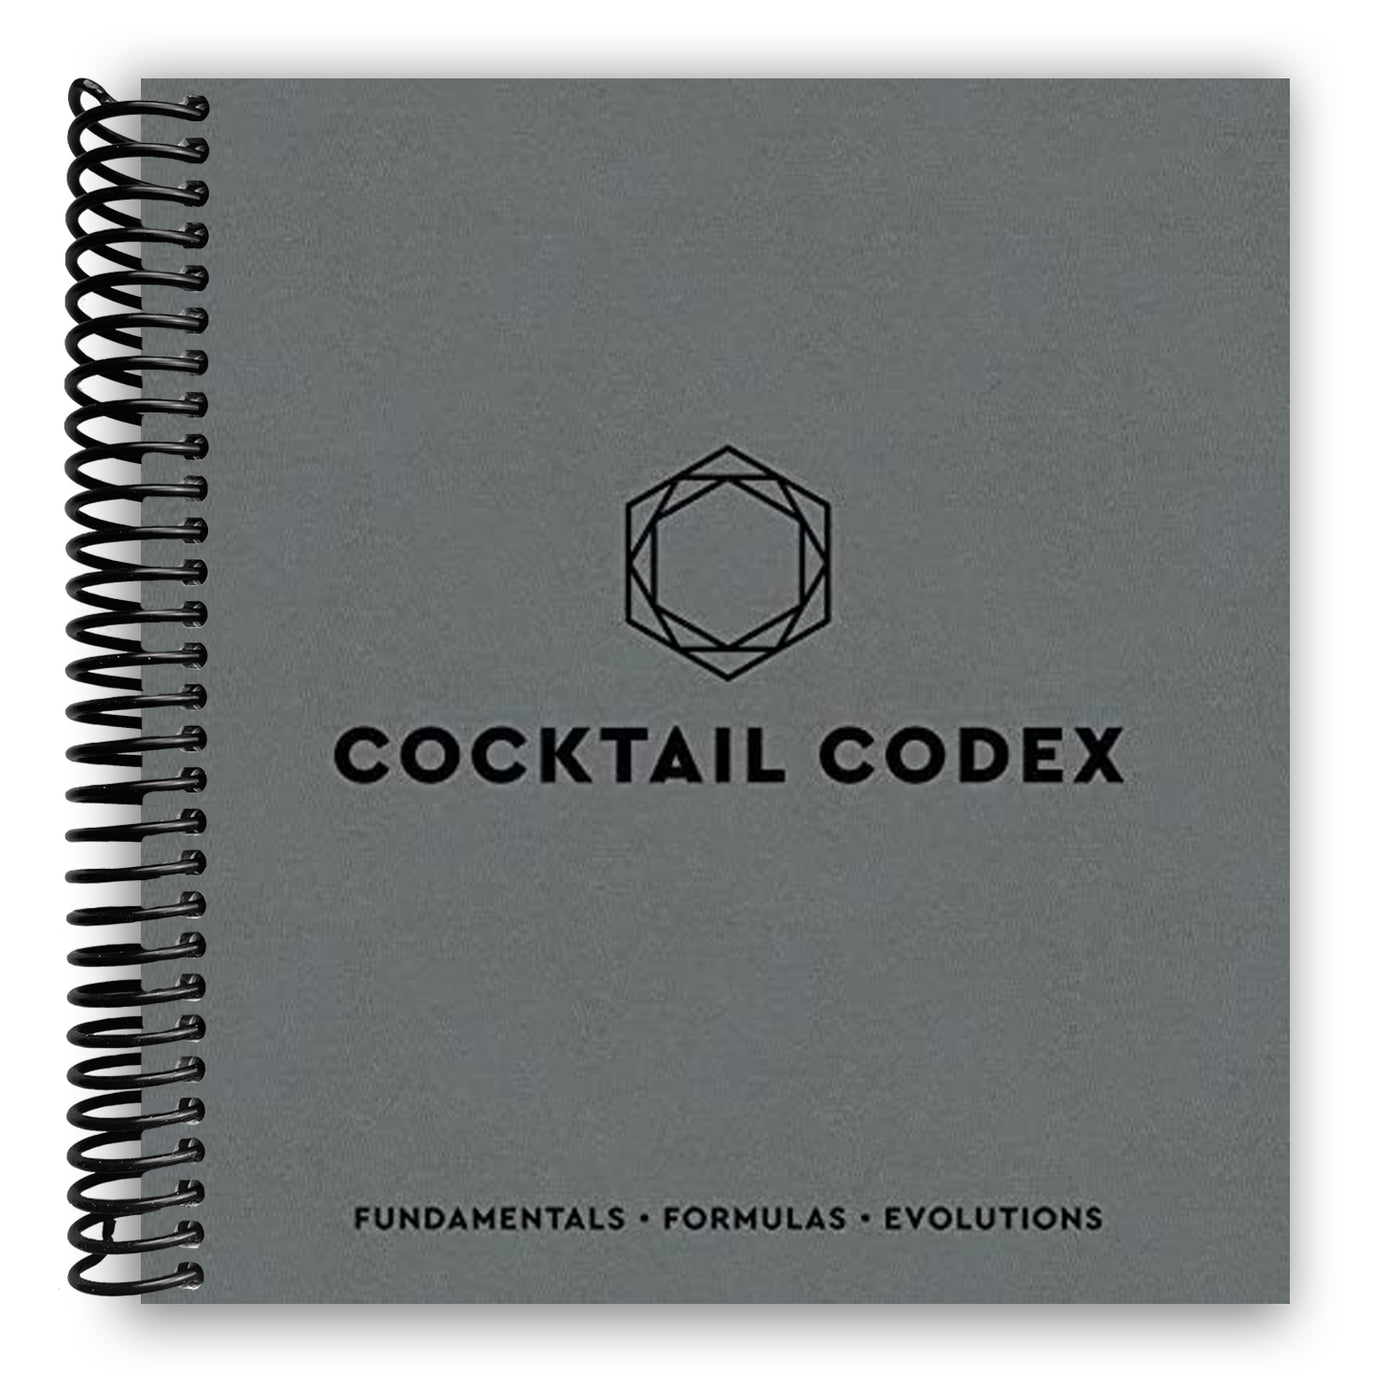 Cocktail Codex: Fundamentals, Formulas, Evolutions (Spiral Bound)